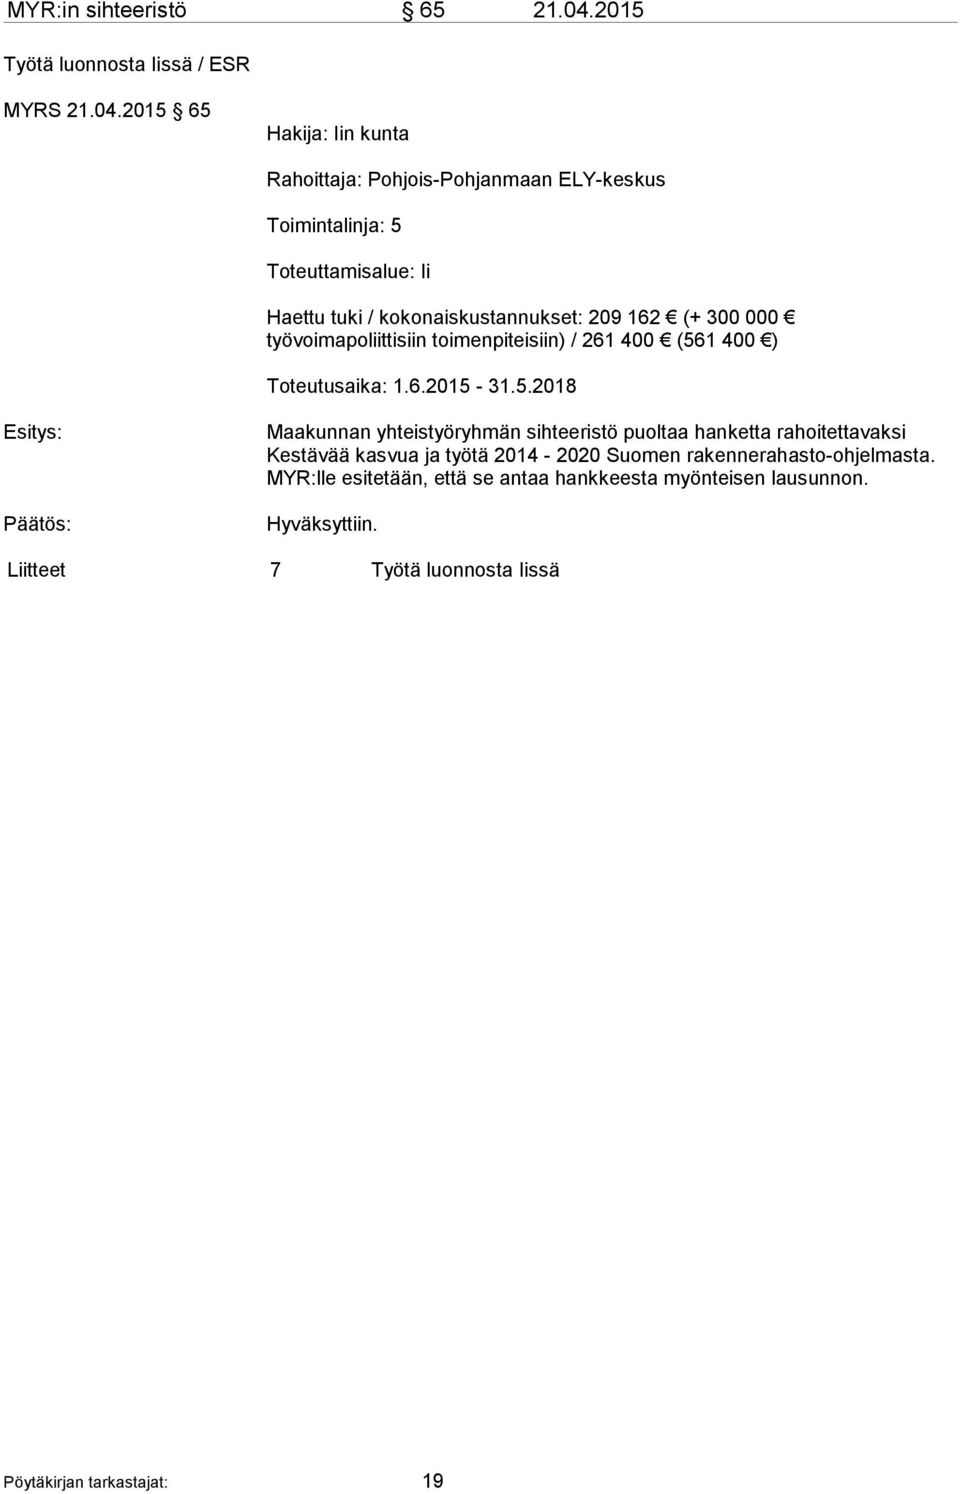 2015 65 Hakija: Iin kunta Rahoittaja: Pohjois-Pohjanmaan ELY-keskus Toimintalinja: 5 Toteuttamisalue: Ii Haettu tuki / kokonaiskustannukset: 209 162 (+